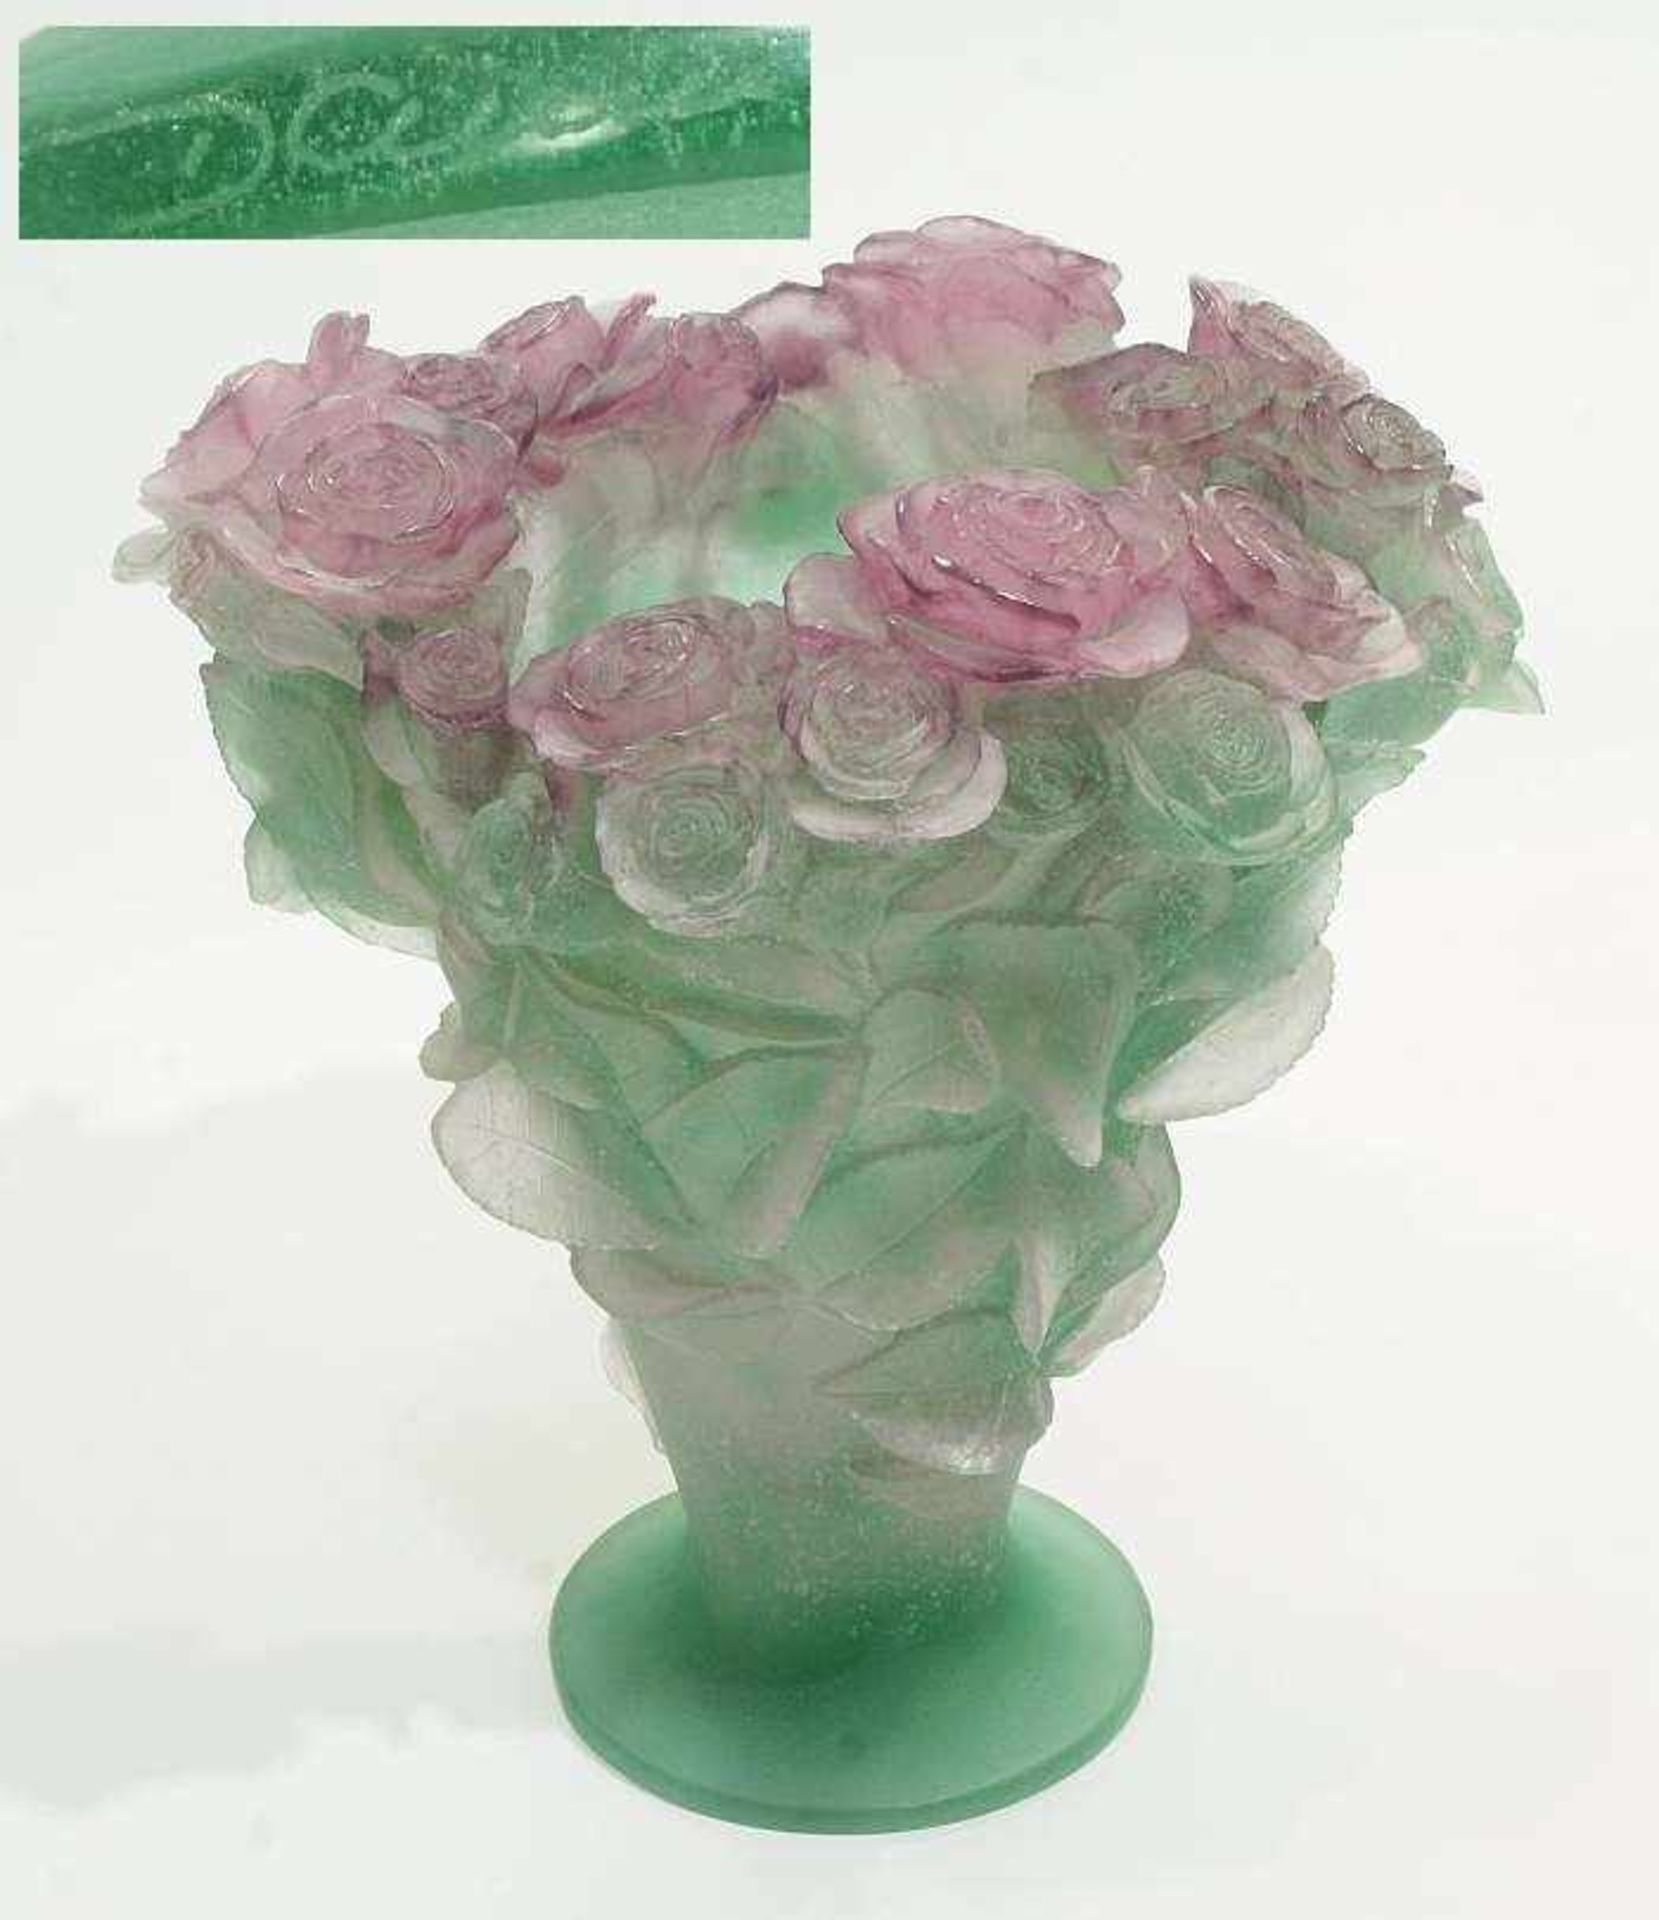 DAUM Pate-de-Verre "Roses" Vase. France. DAUM Pate-de-Verre "Roses" Vase. France. 20. Jahrhundert.